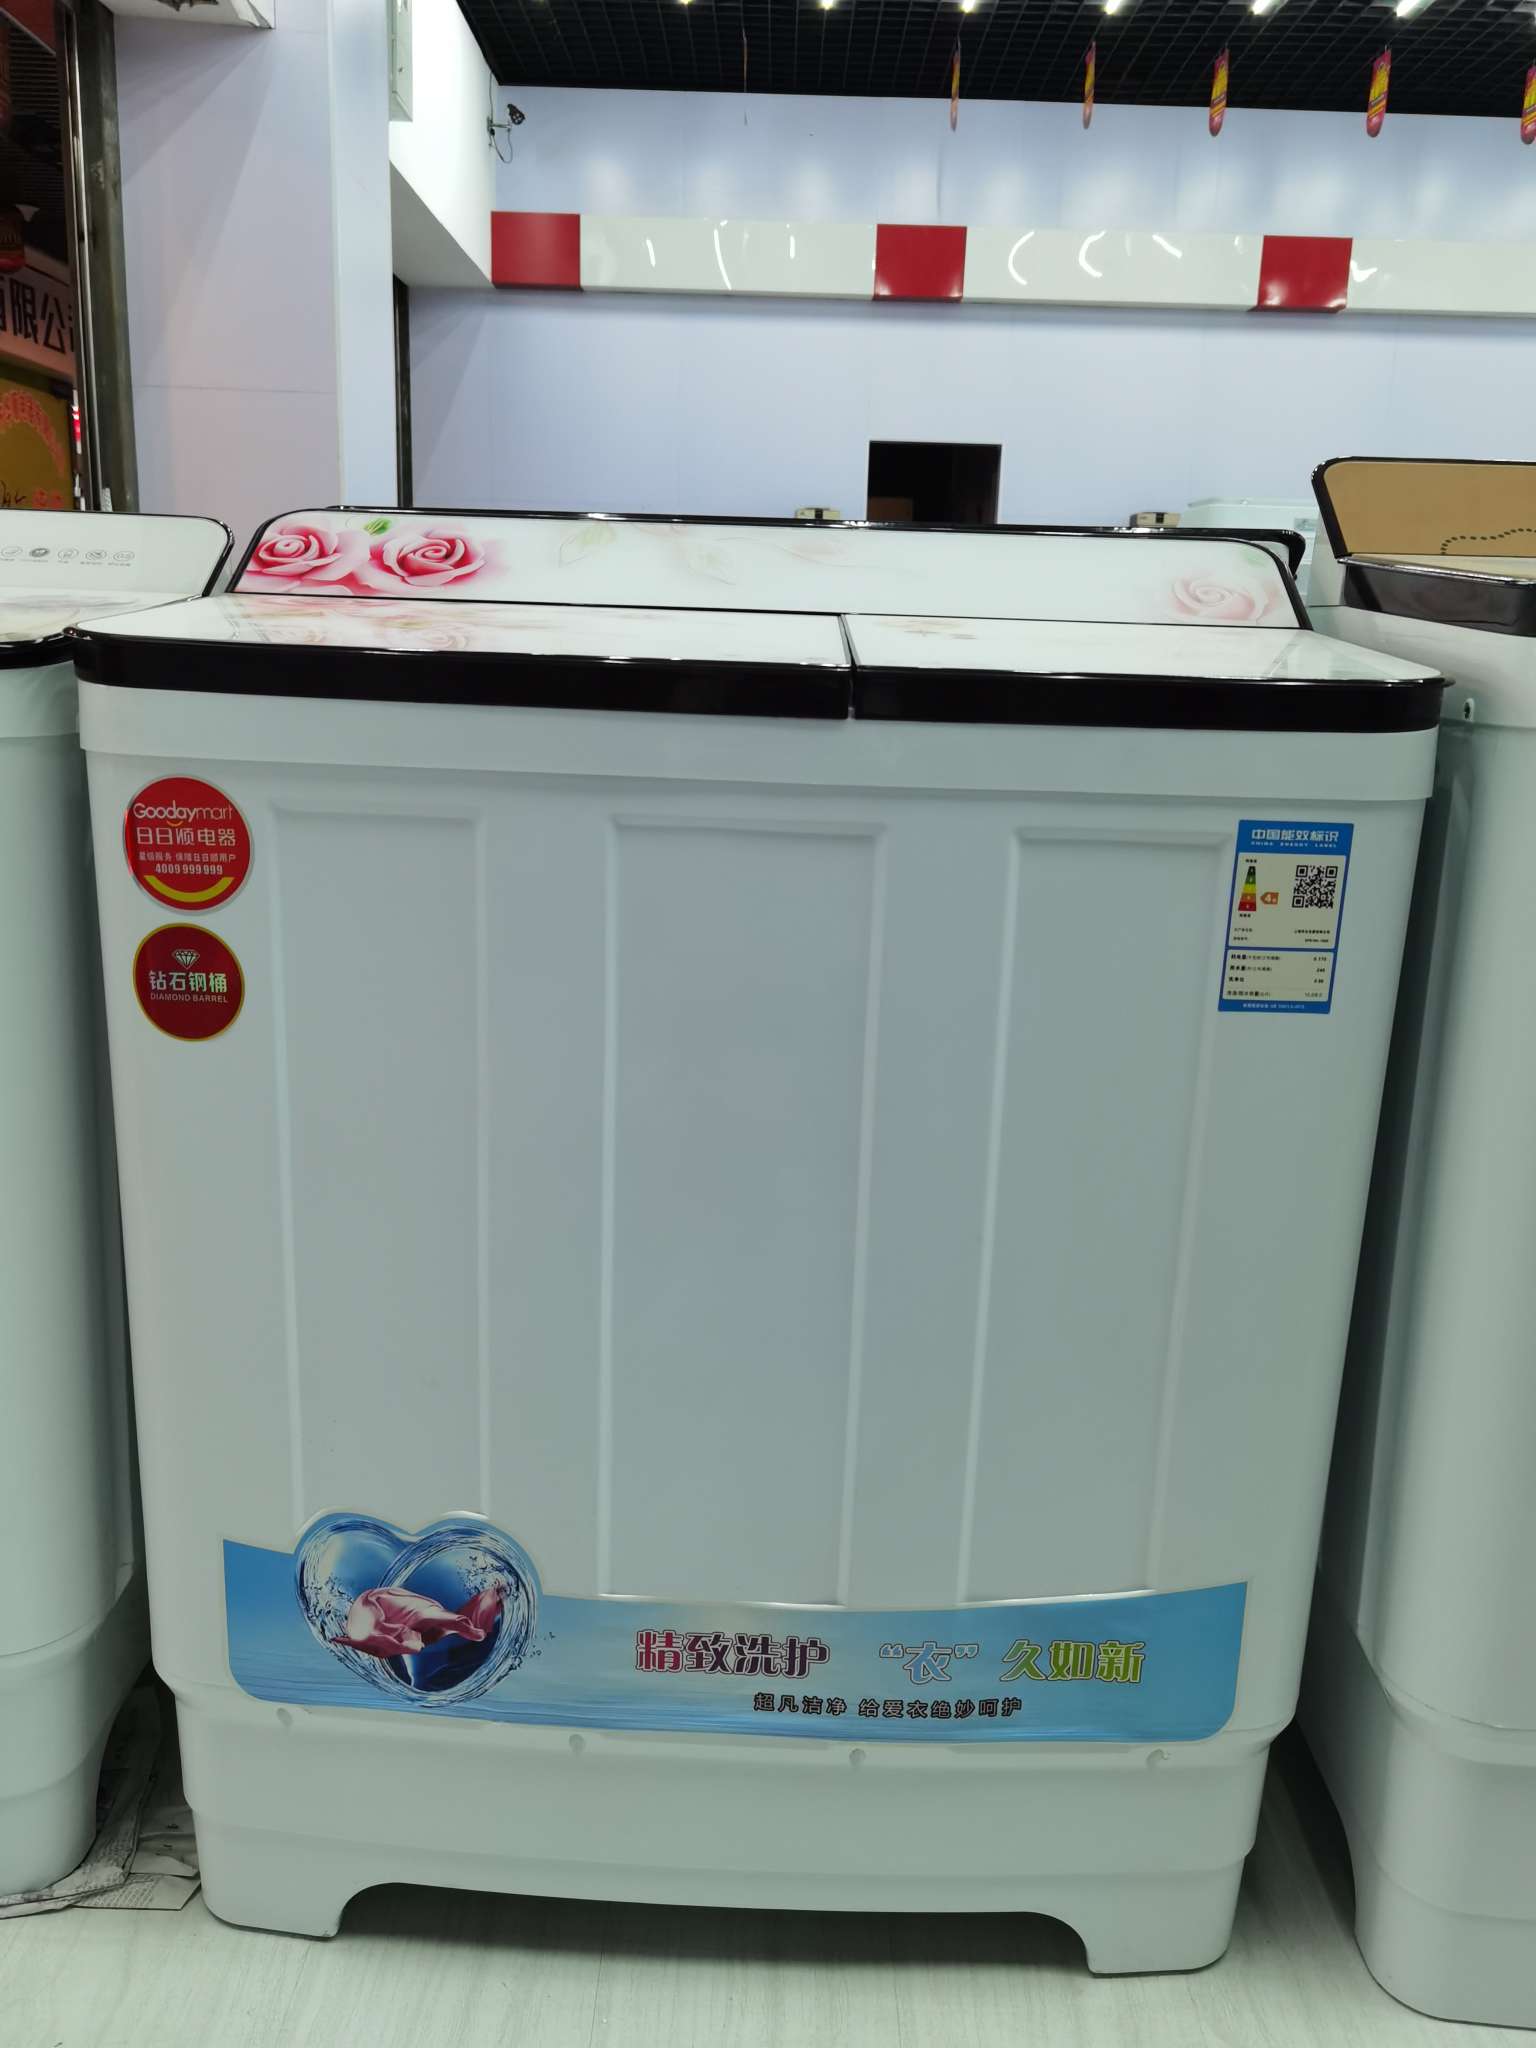 上海华生半自动洗衣机图